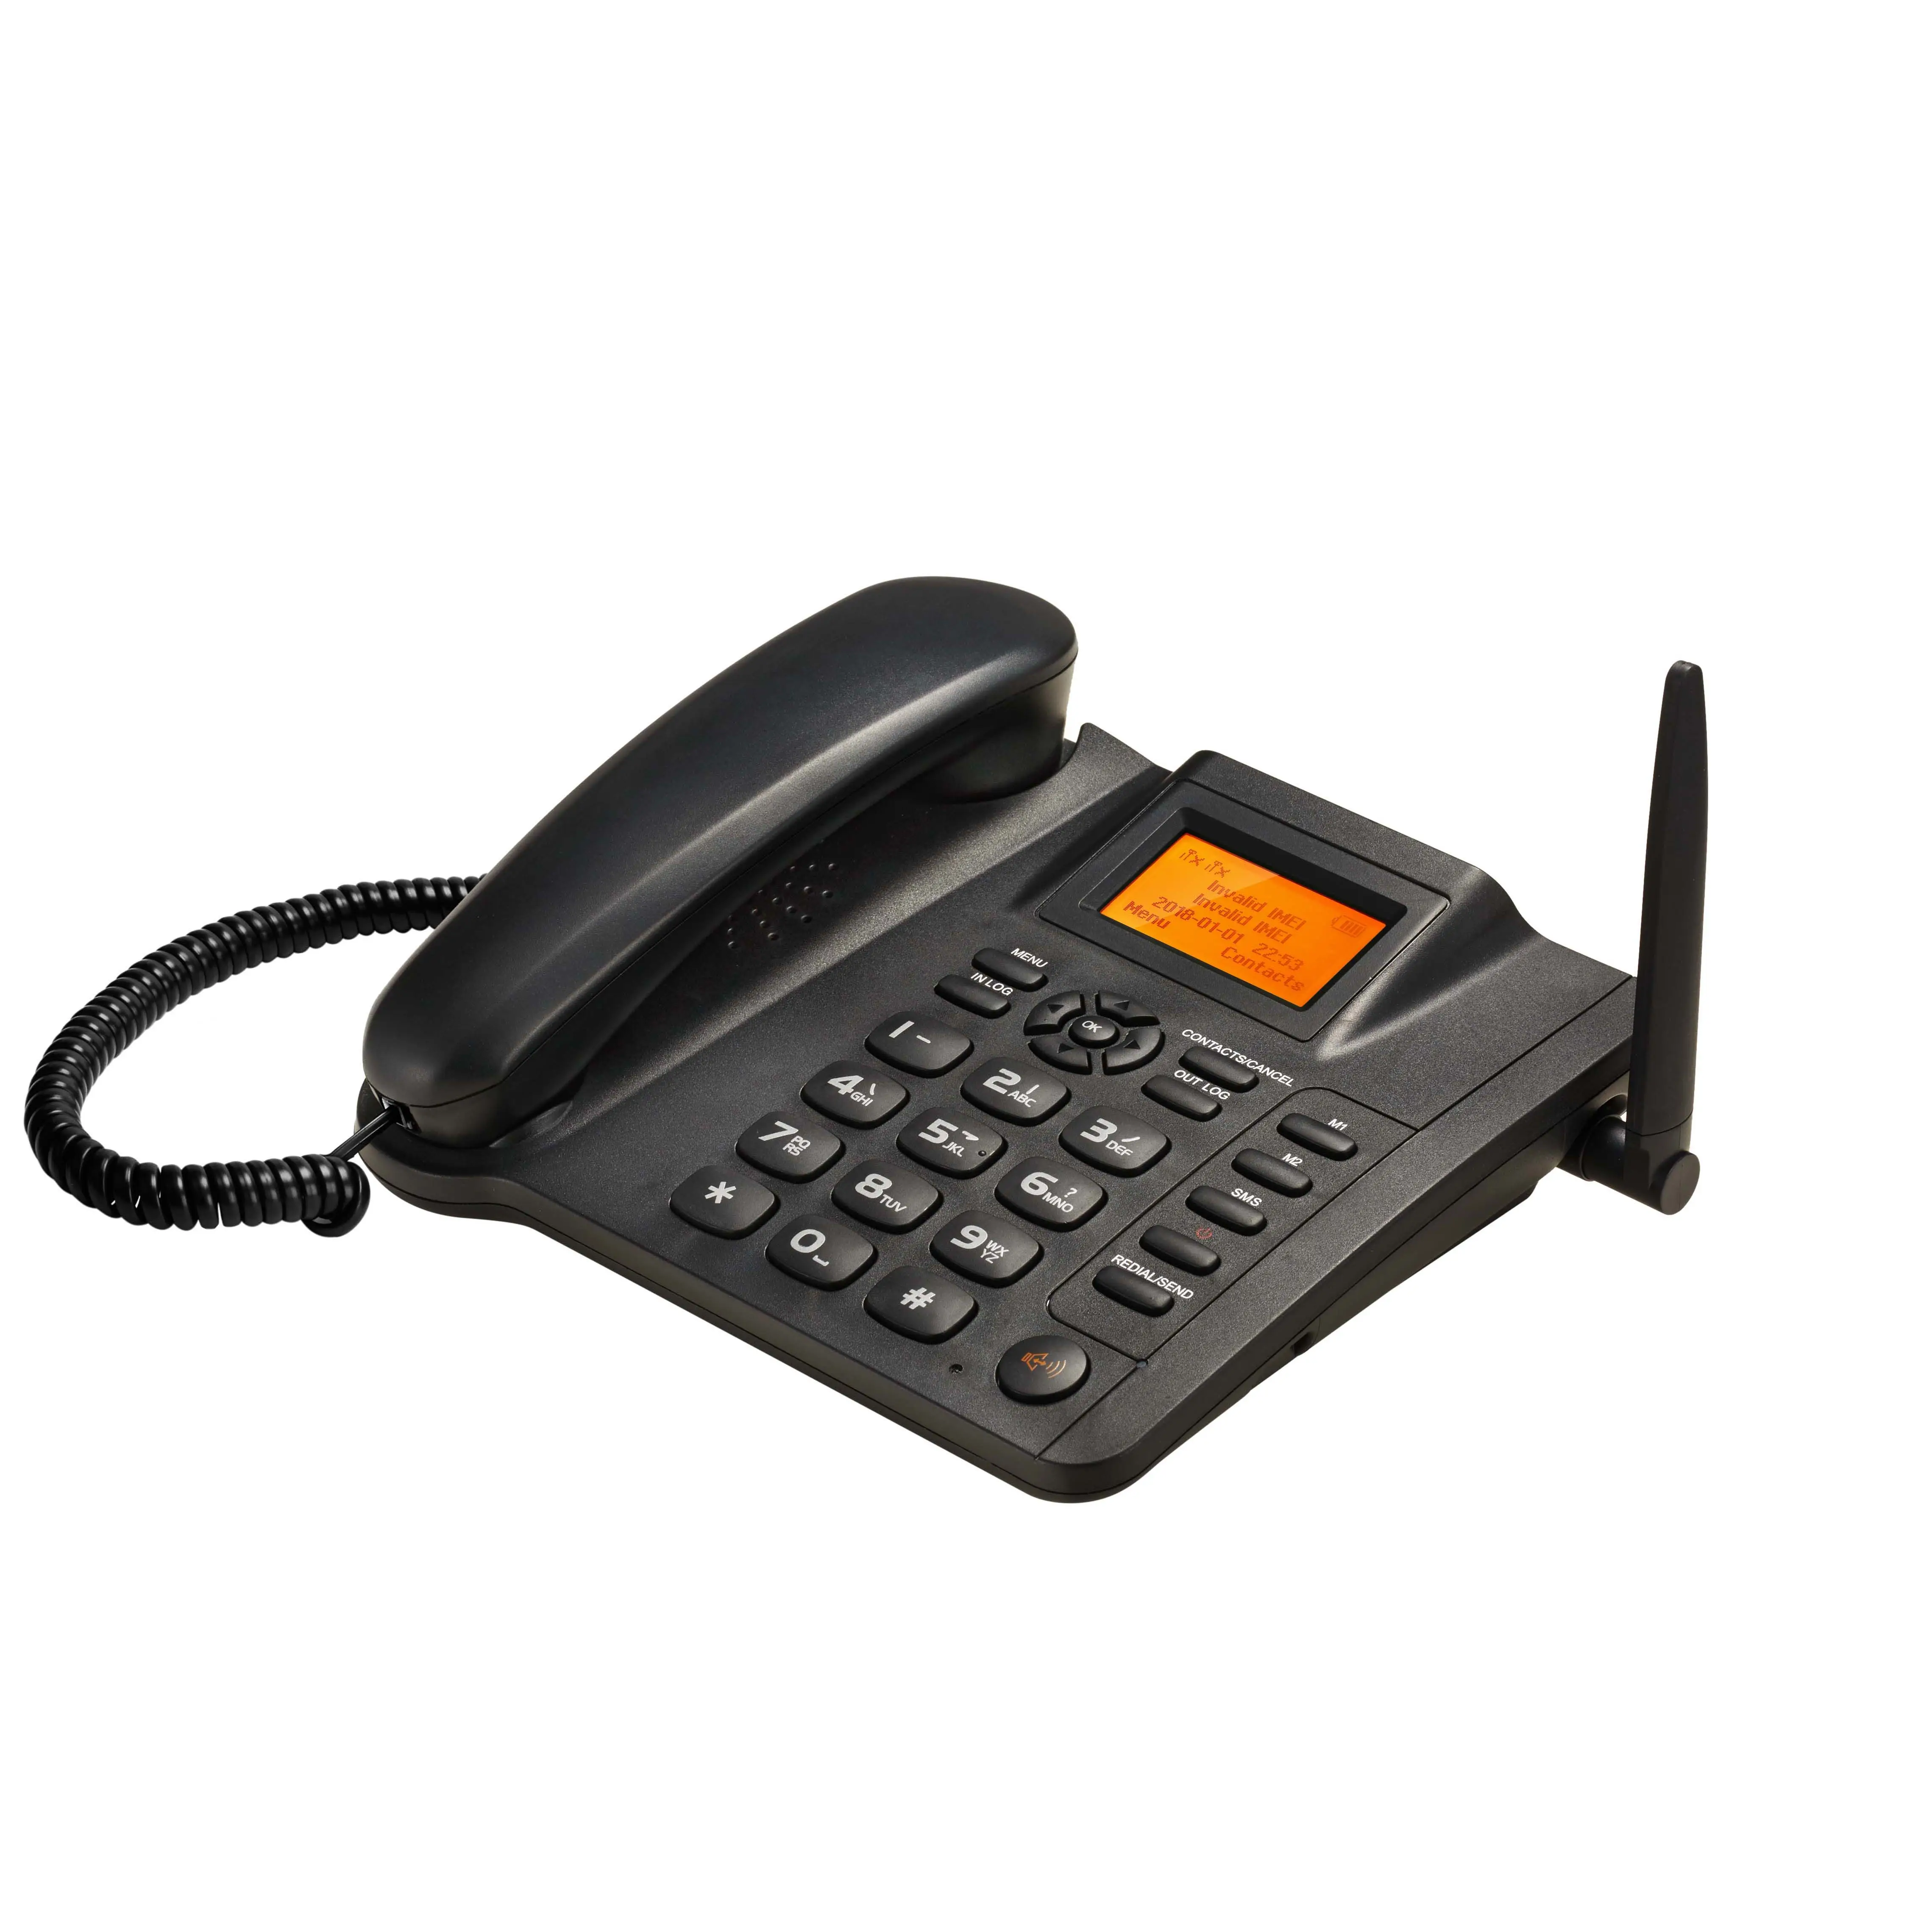 ESN-10A दोहरी दो सिम कार्ड जीएसएम 2 जी फिक्स्ड वायरलेस फोन FWP जीएसएम डेस्कटॉप फोन